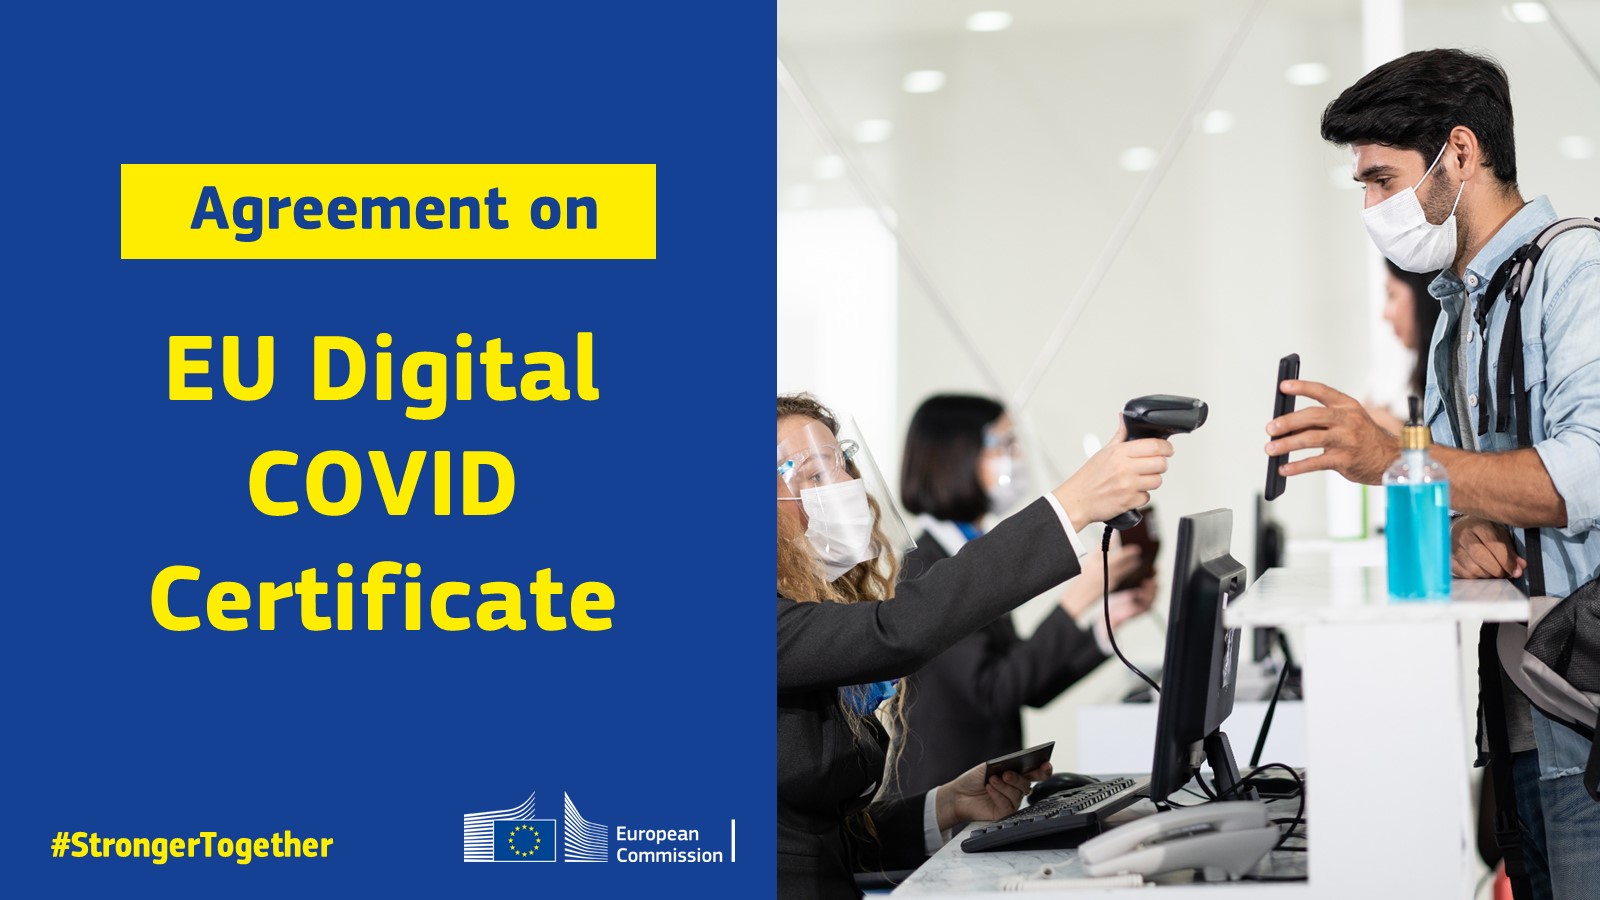 Certificato COVID digitale UE: accordo provvisorio tra Parlamento e Commissione europea per partire a luglio.